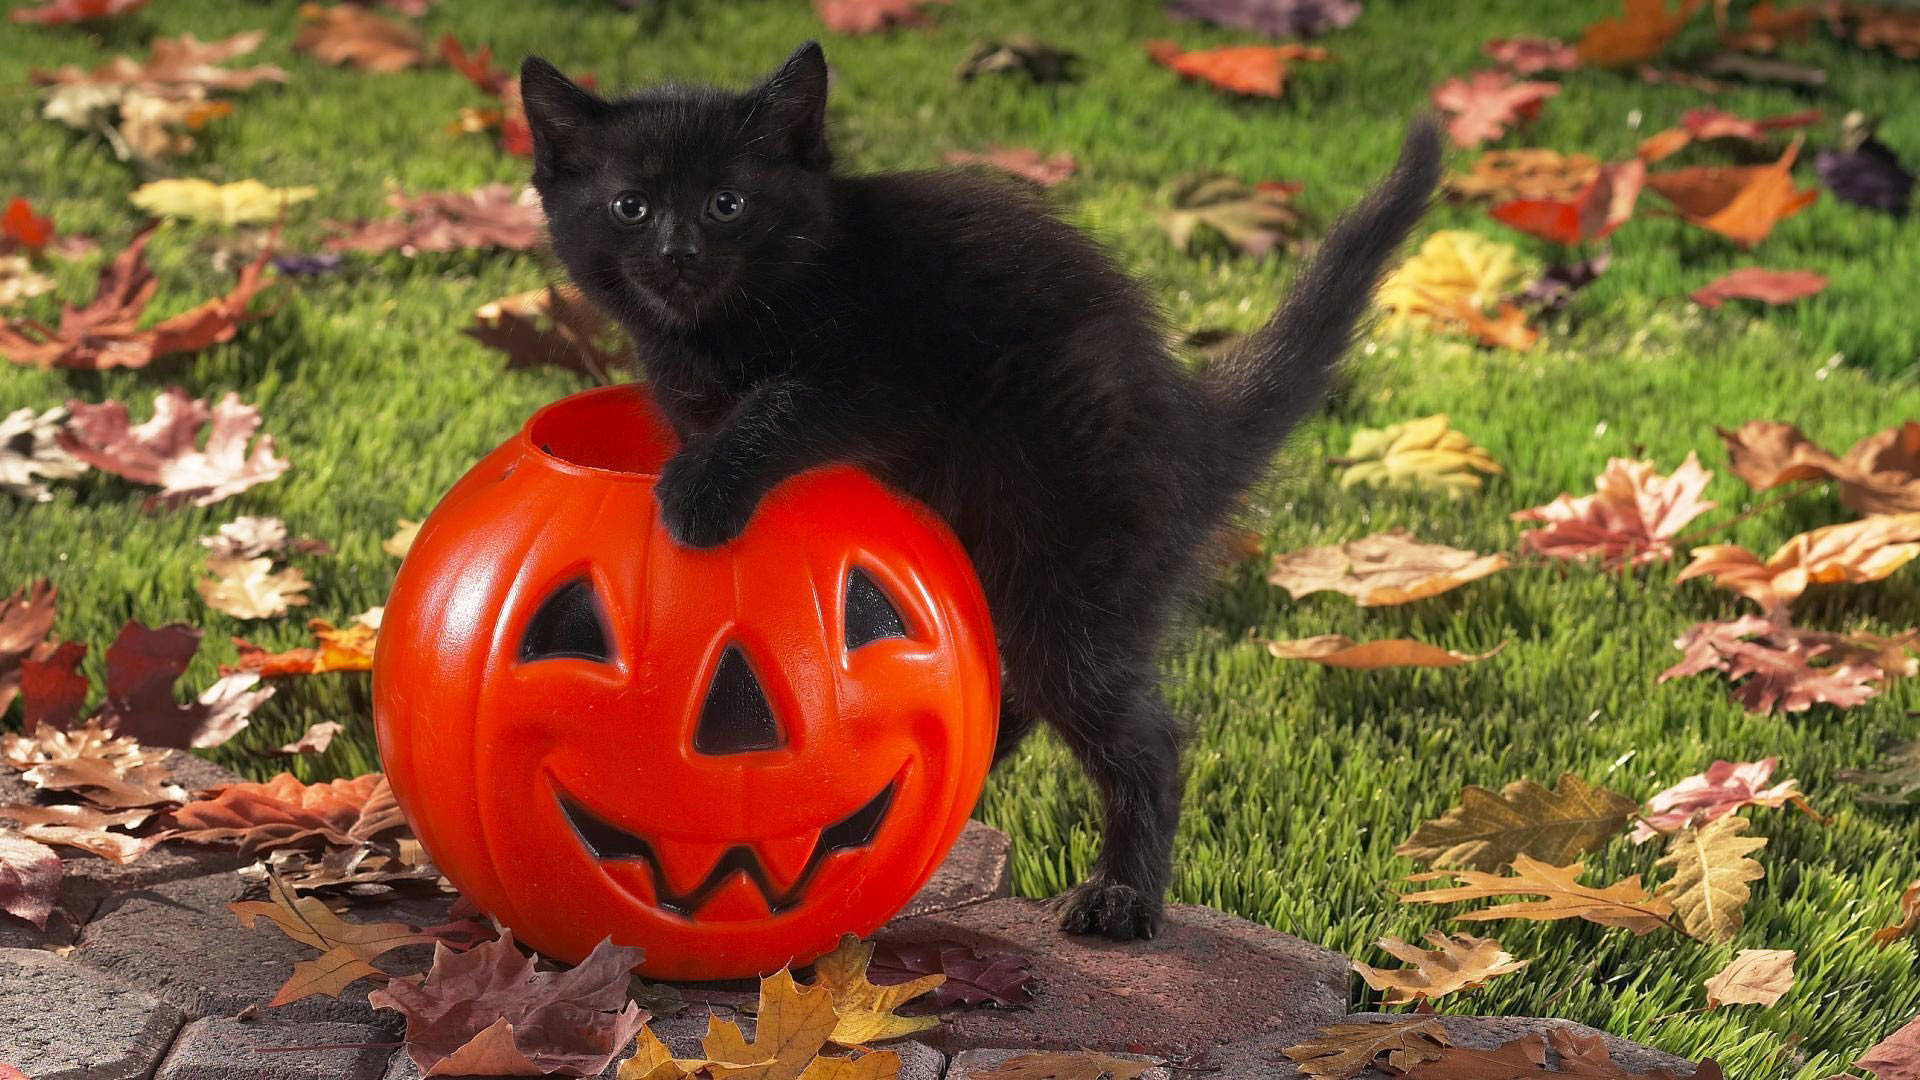 Cat And Pumpkin Cute Halloween Desktop Wallpaper